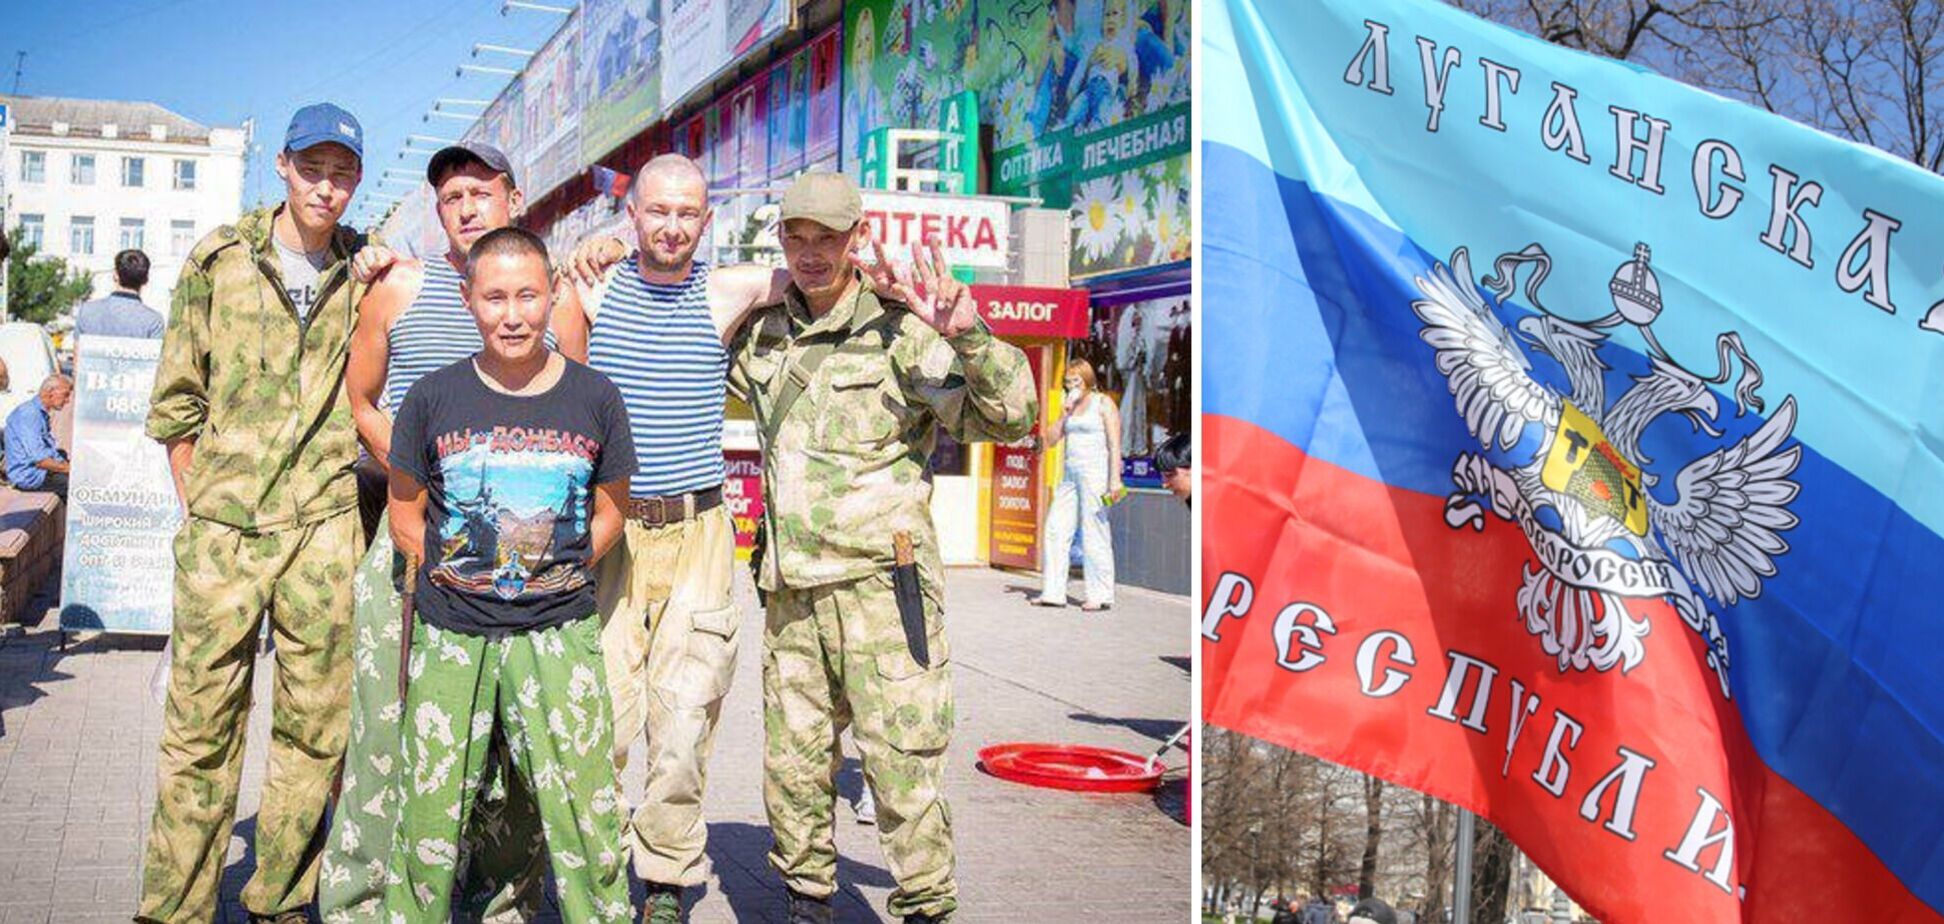 Останні дні ОРЛО: як Луганщина перетворюється на бурятську народну республіку